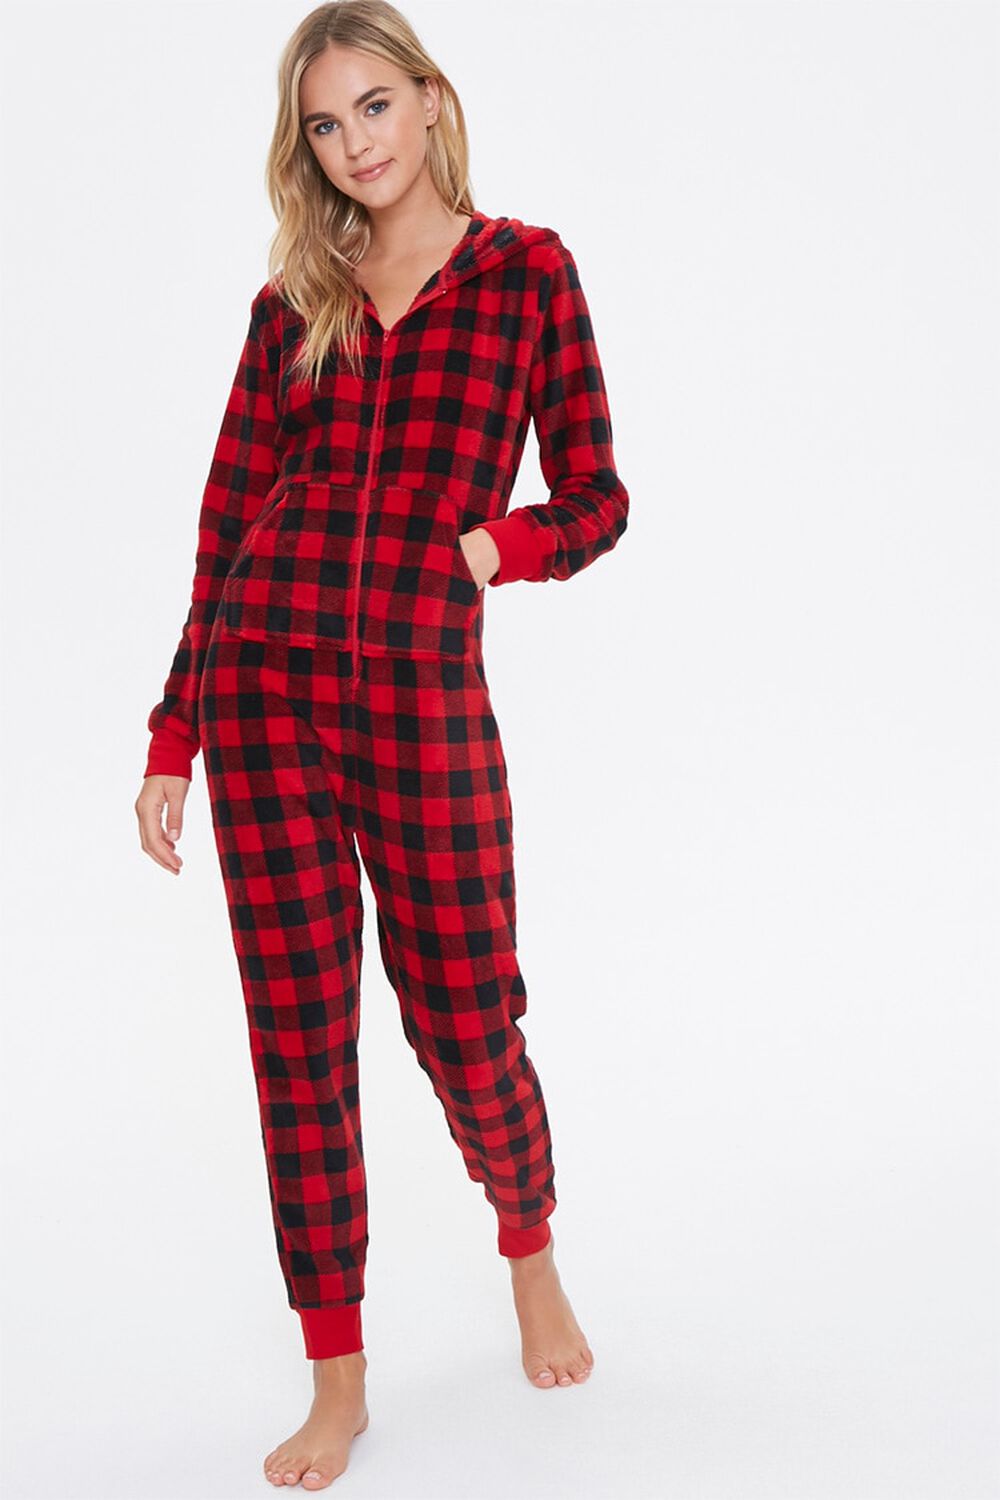 RED/BLACK Plaid Hooded Pajama Jumpsuit, image 1